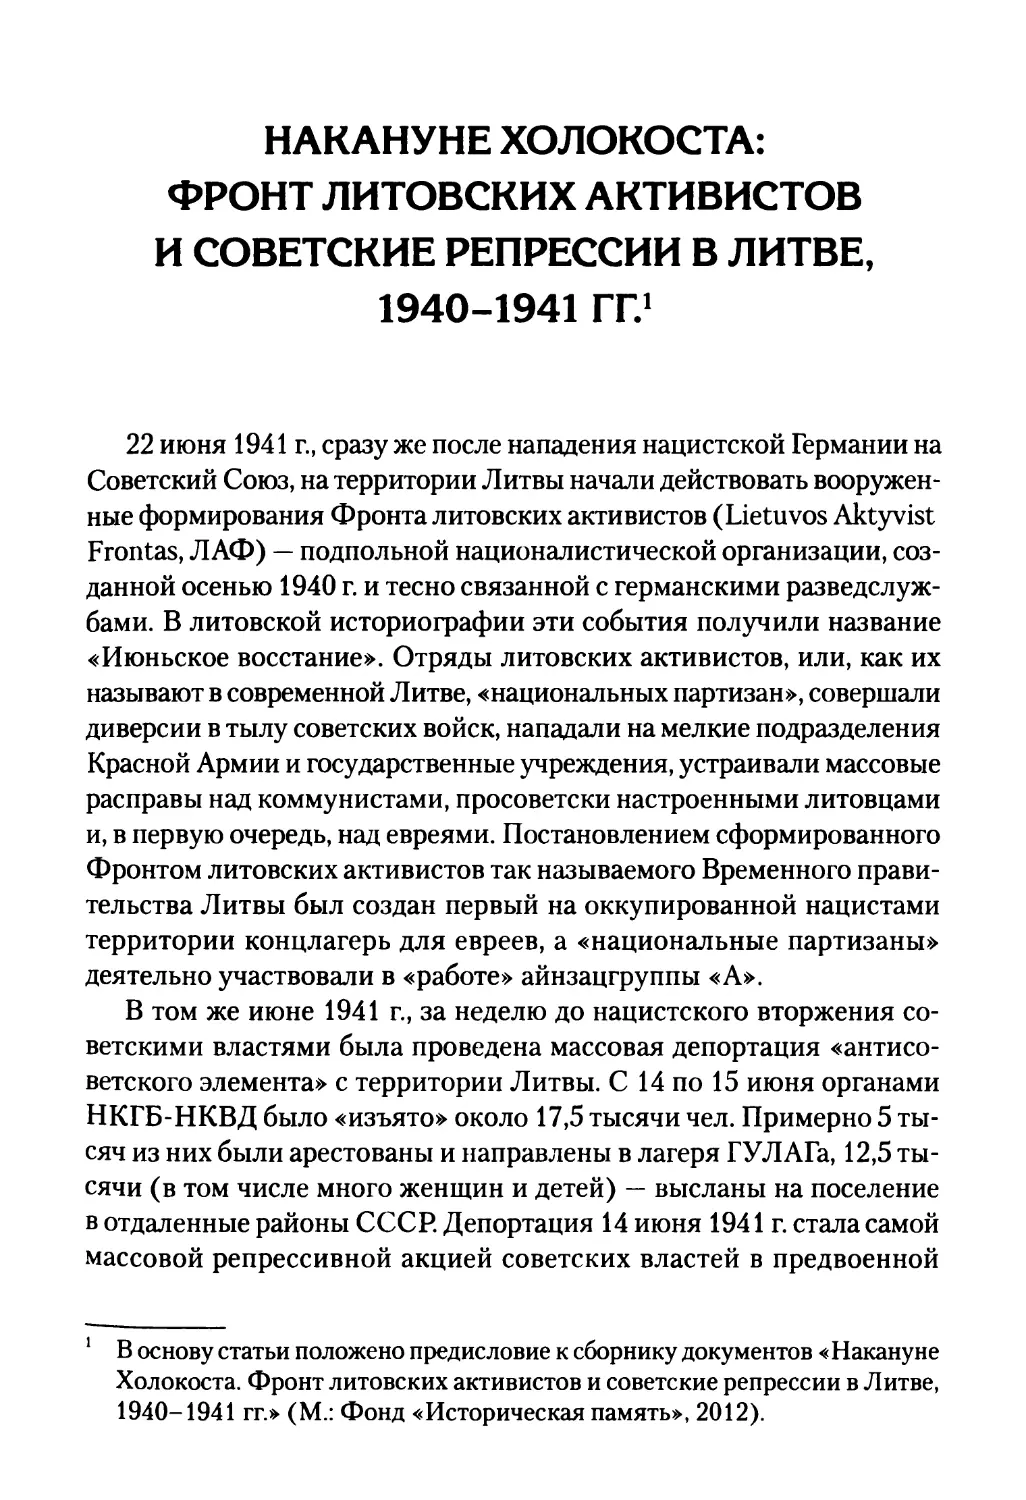 Накануне Холокоста: Фронт литовских активистов и советские репрессии в Литве, 1940-1941 гг